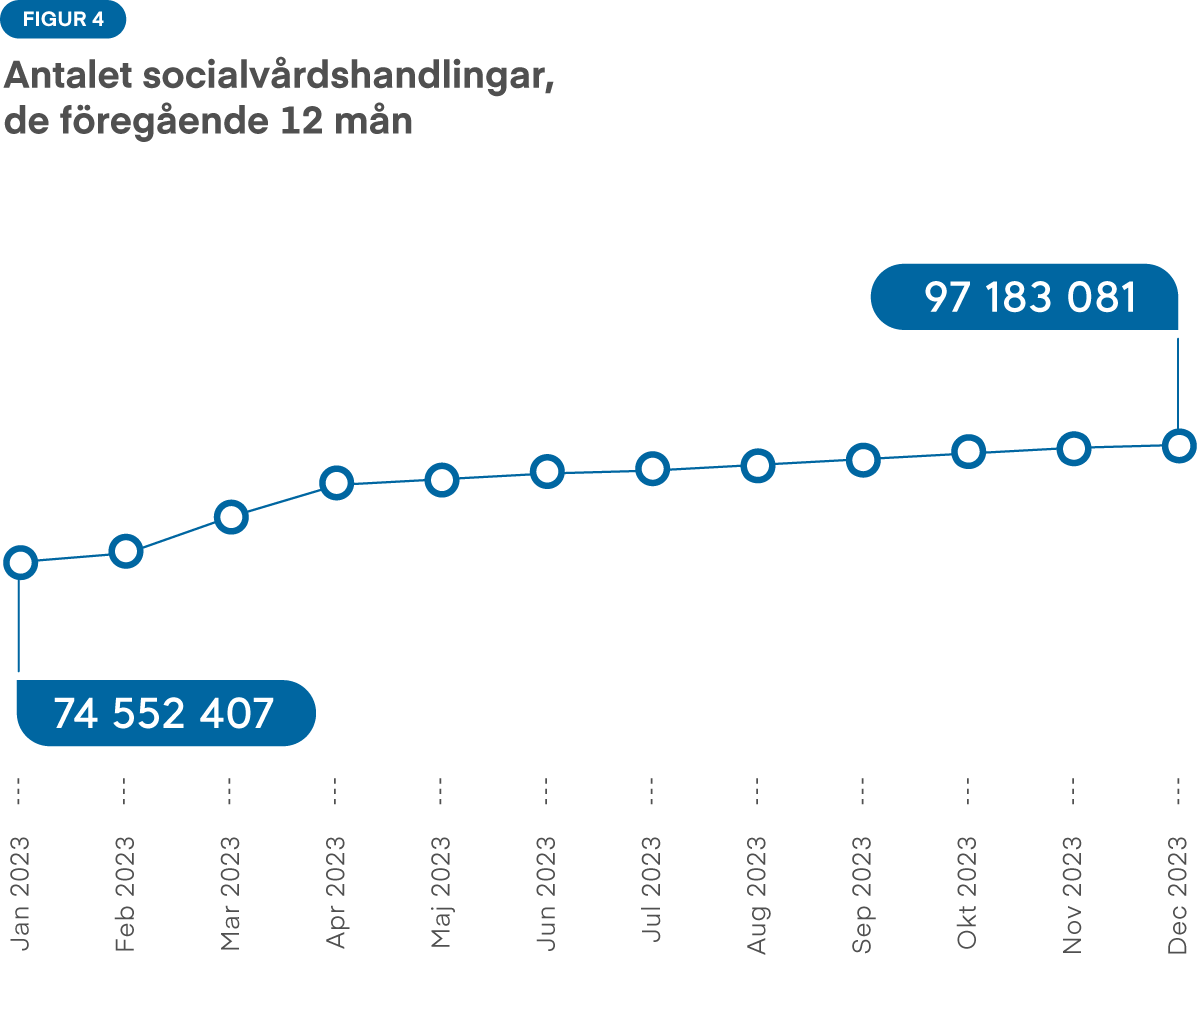 Figur 4: Under de senaste tolv månaderna har antalet socialvårdshandlingar ökat från 27 miljoner till 90 miljoner. Särskilt mellan oktober och januari var tillväxten mycket stark.